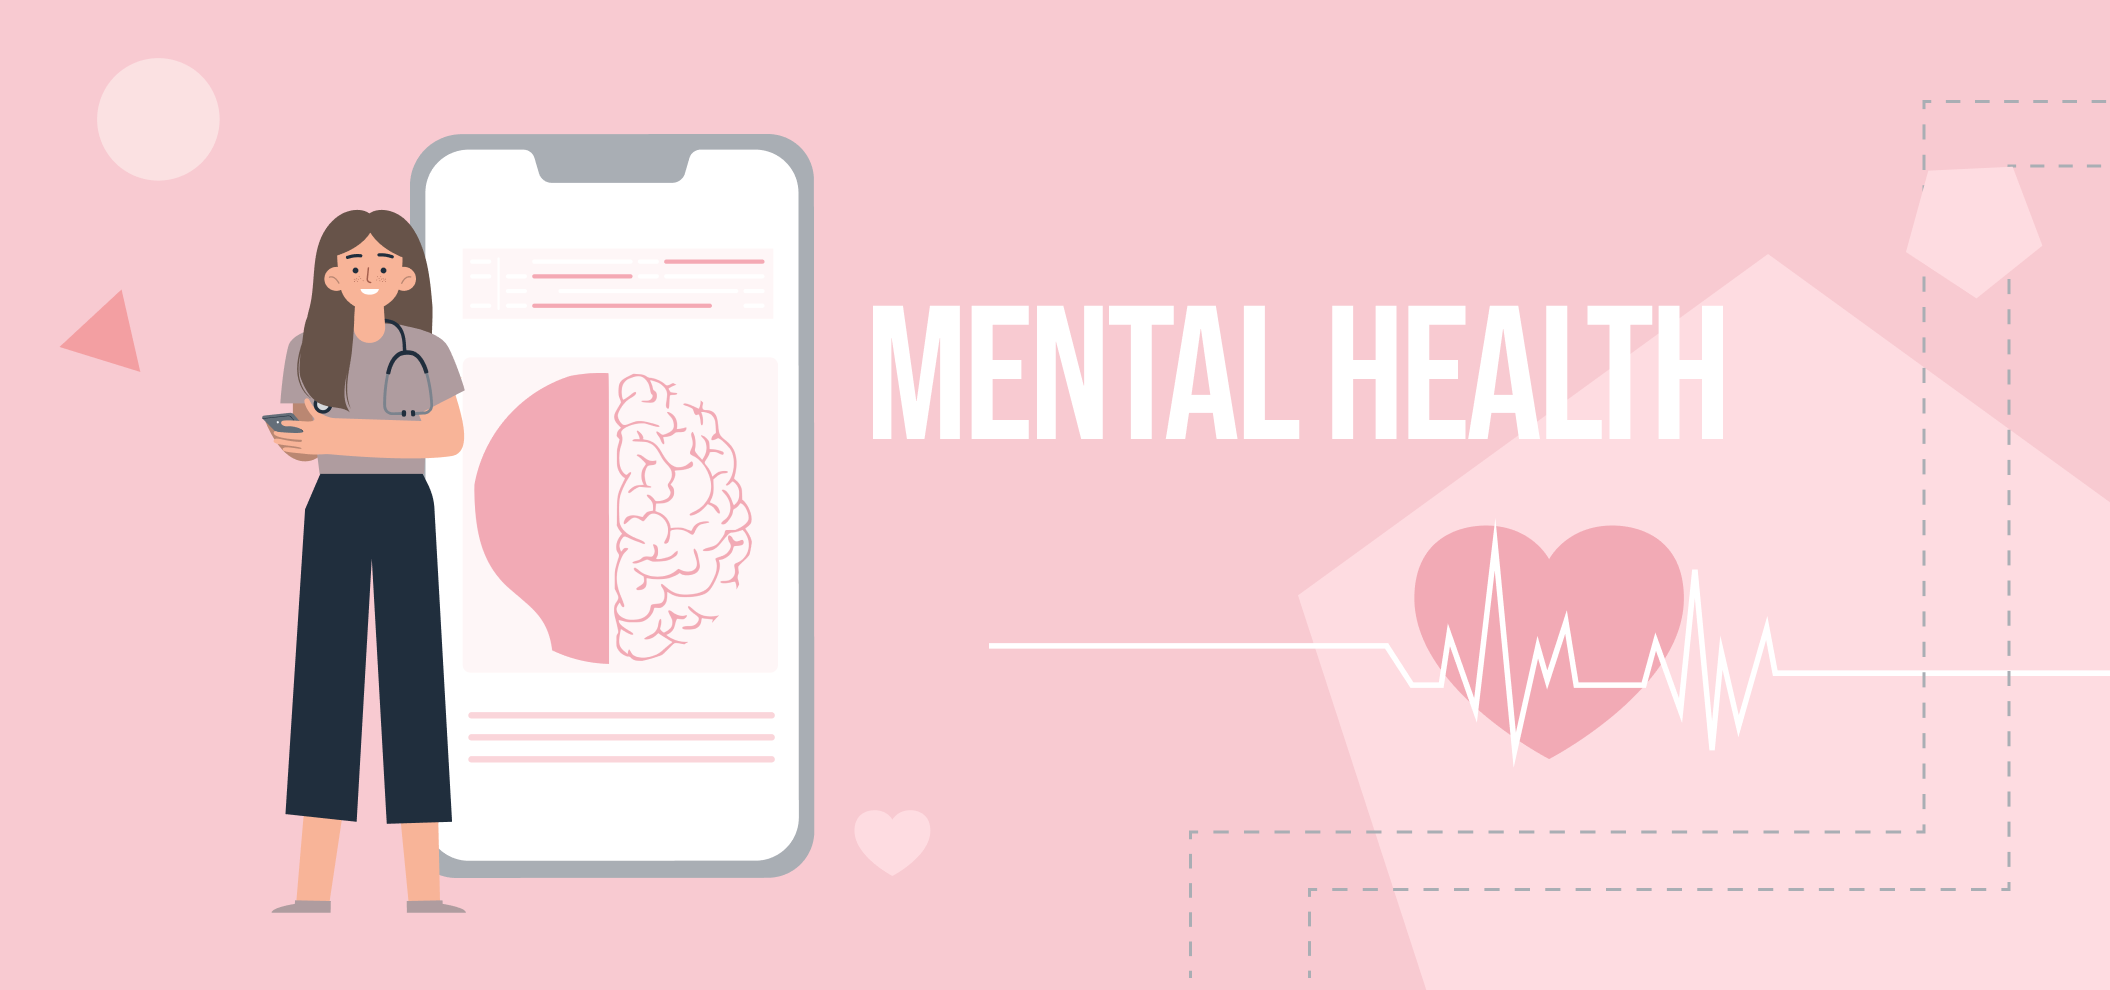 Mental Health in a digital world